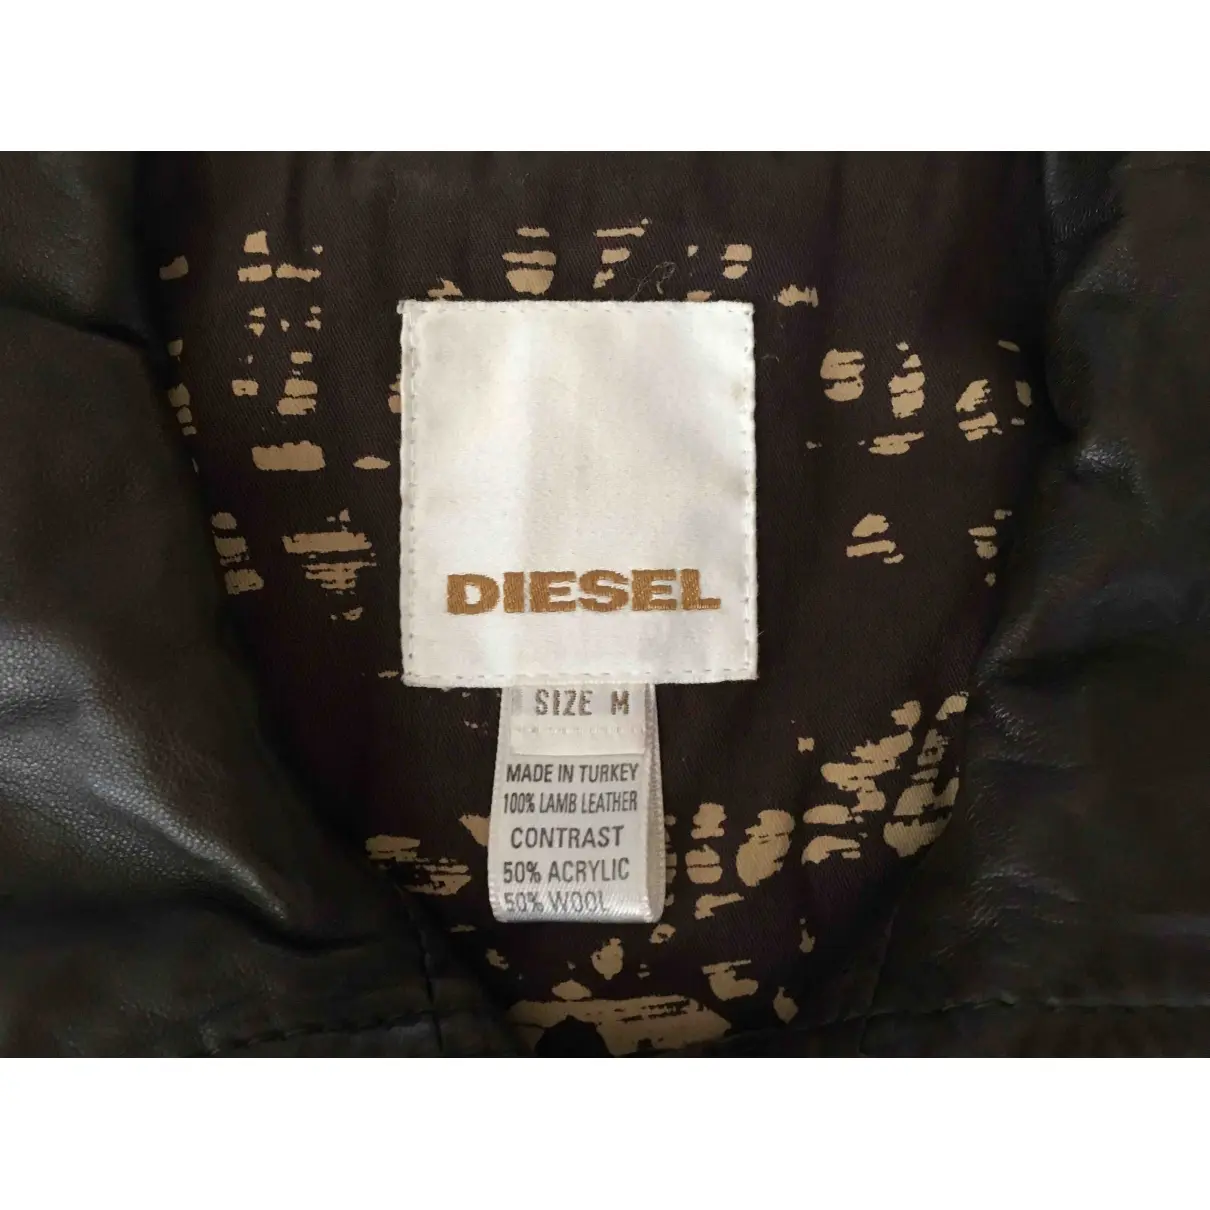 Buy Diesel Leather biker jacket online